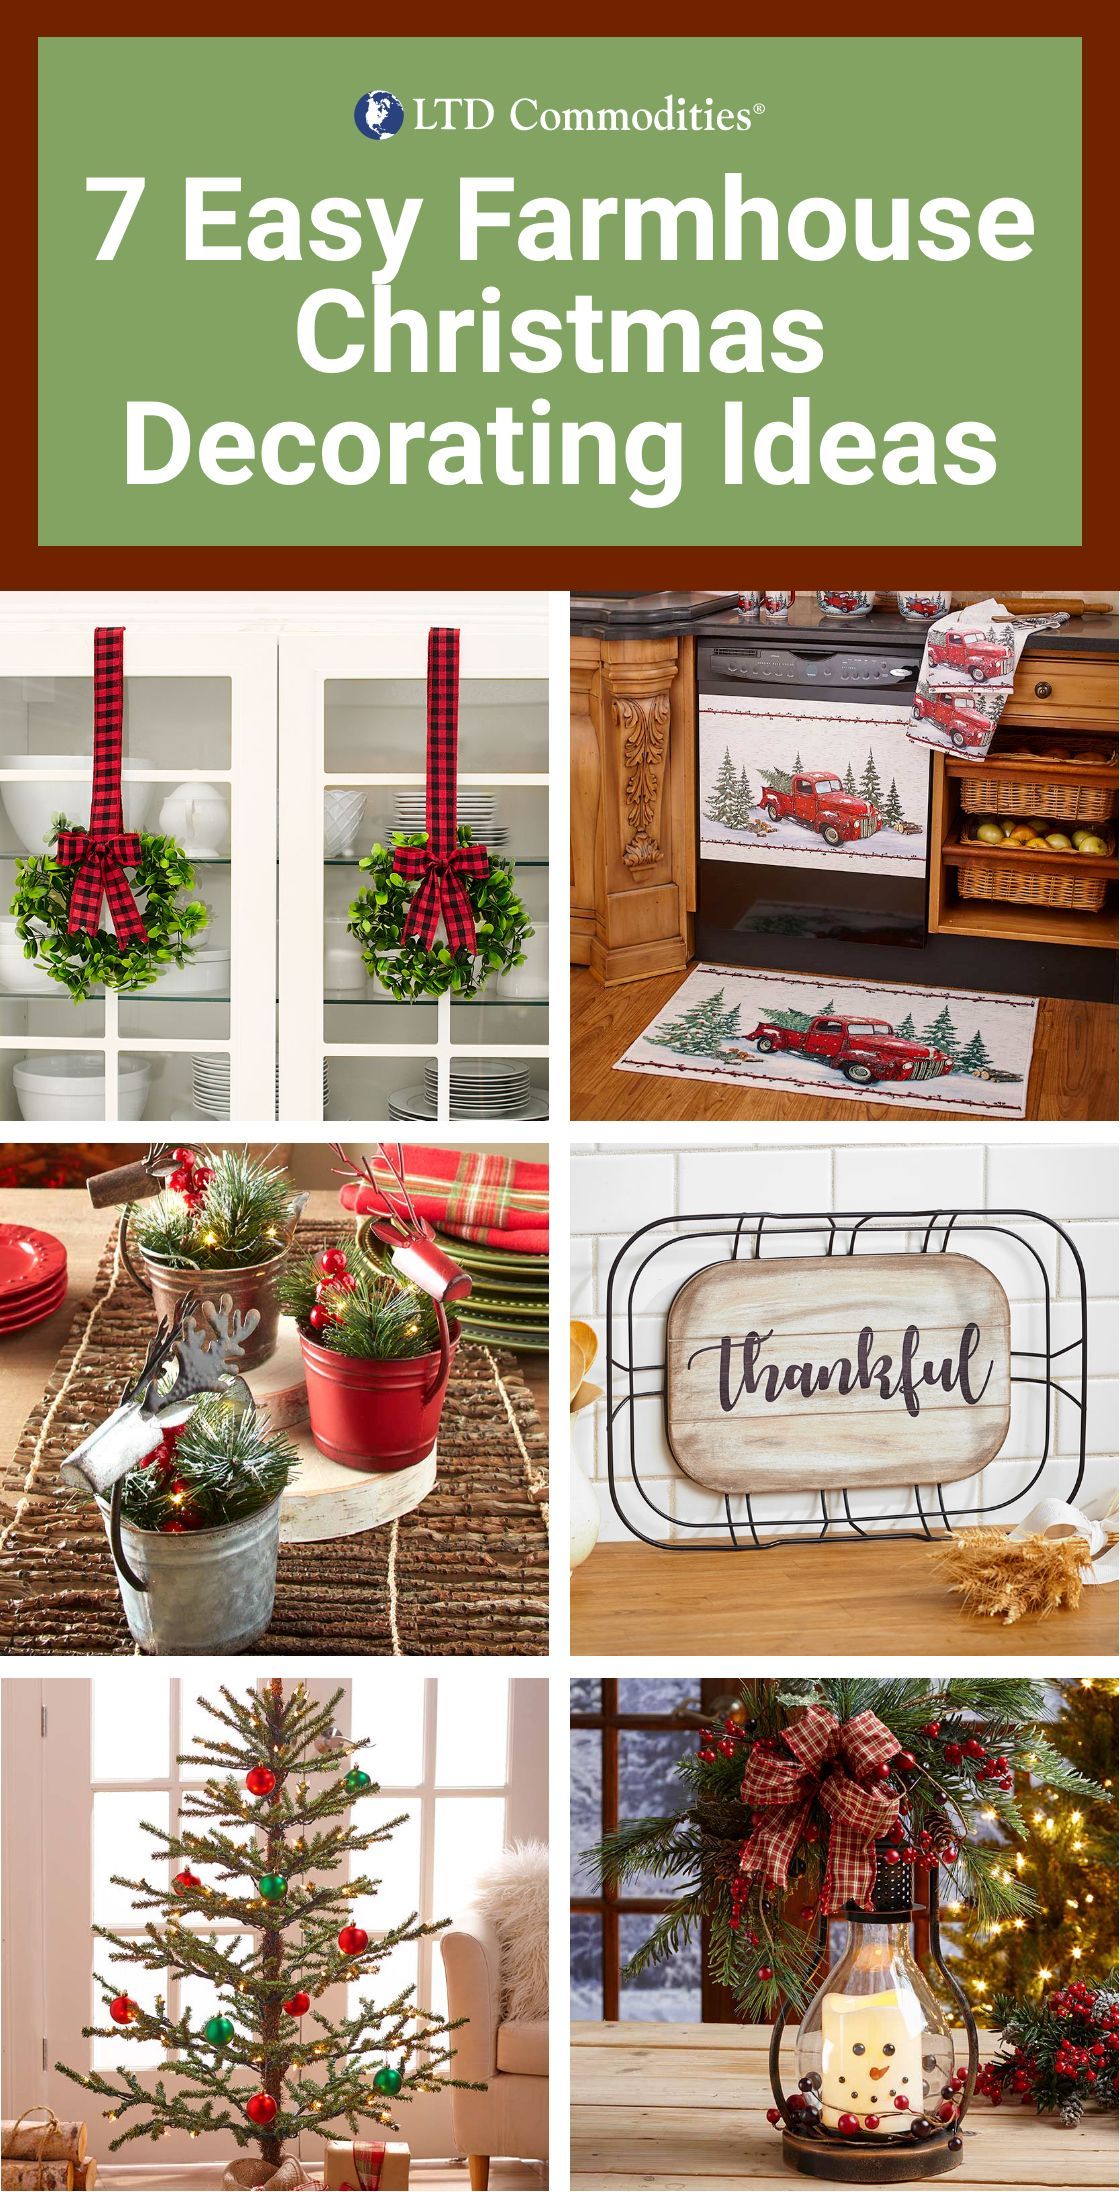 7 Easy Farmhouse Christmas Decorating Ideas -   18 farmhouse decorations ideas